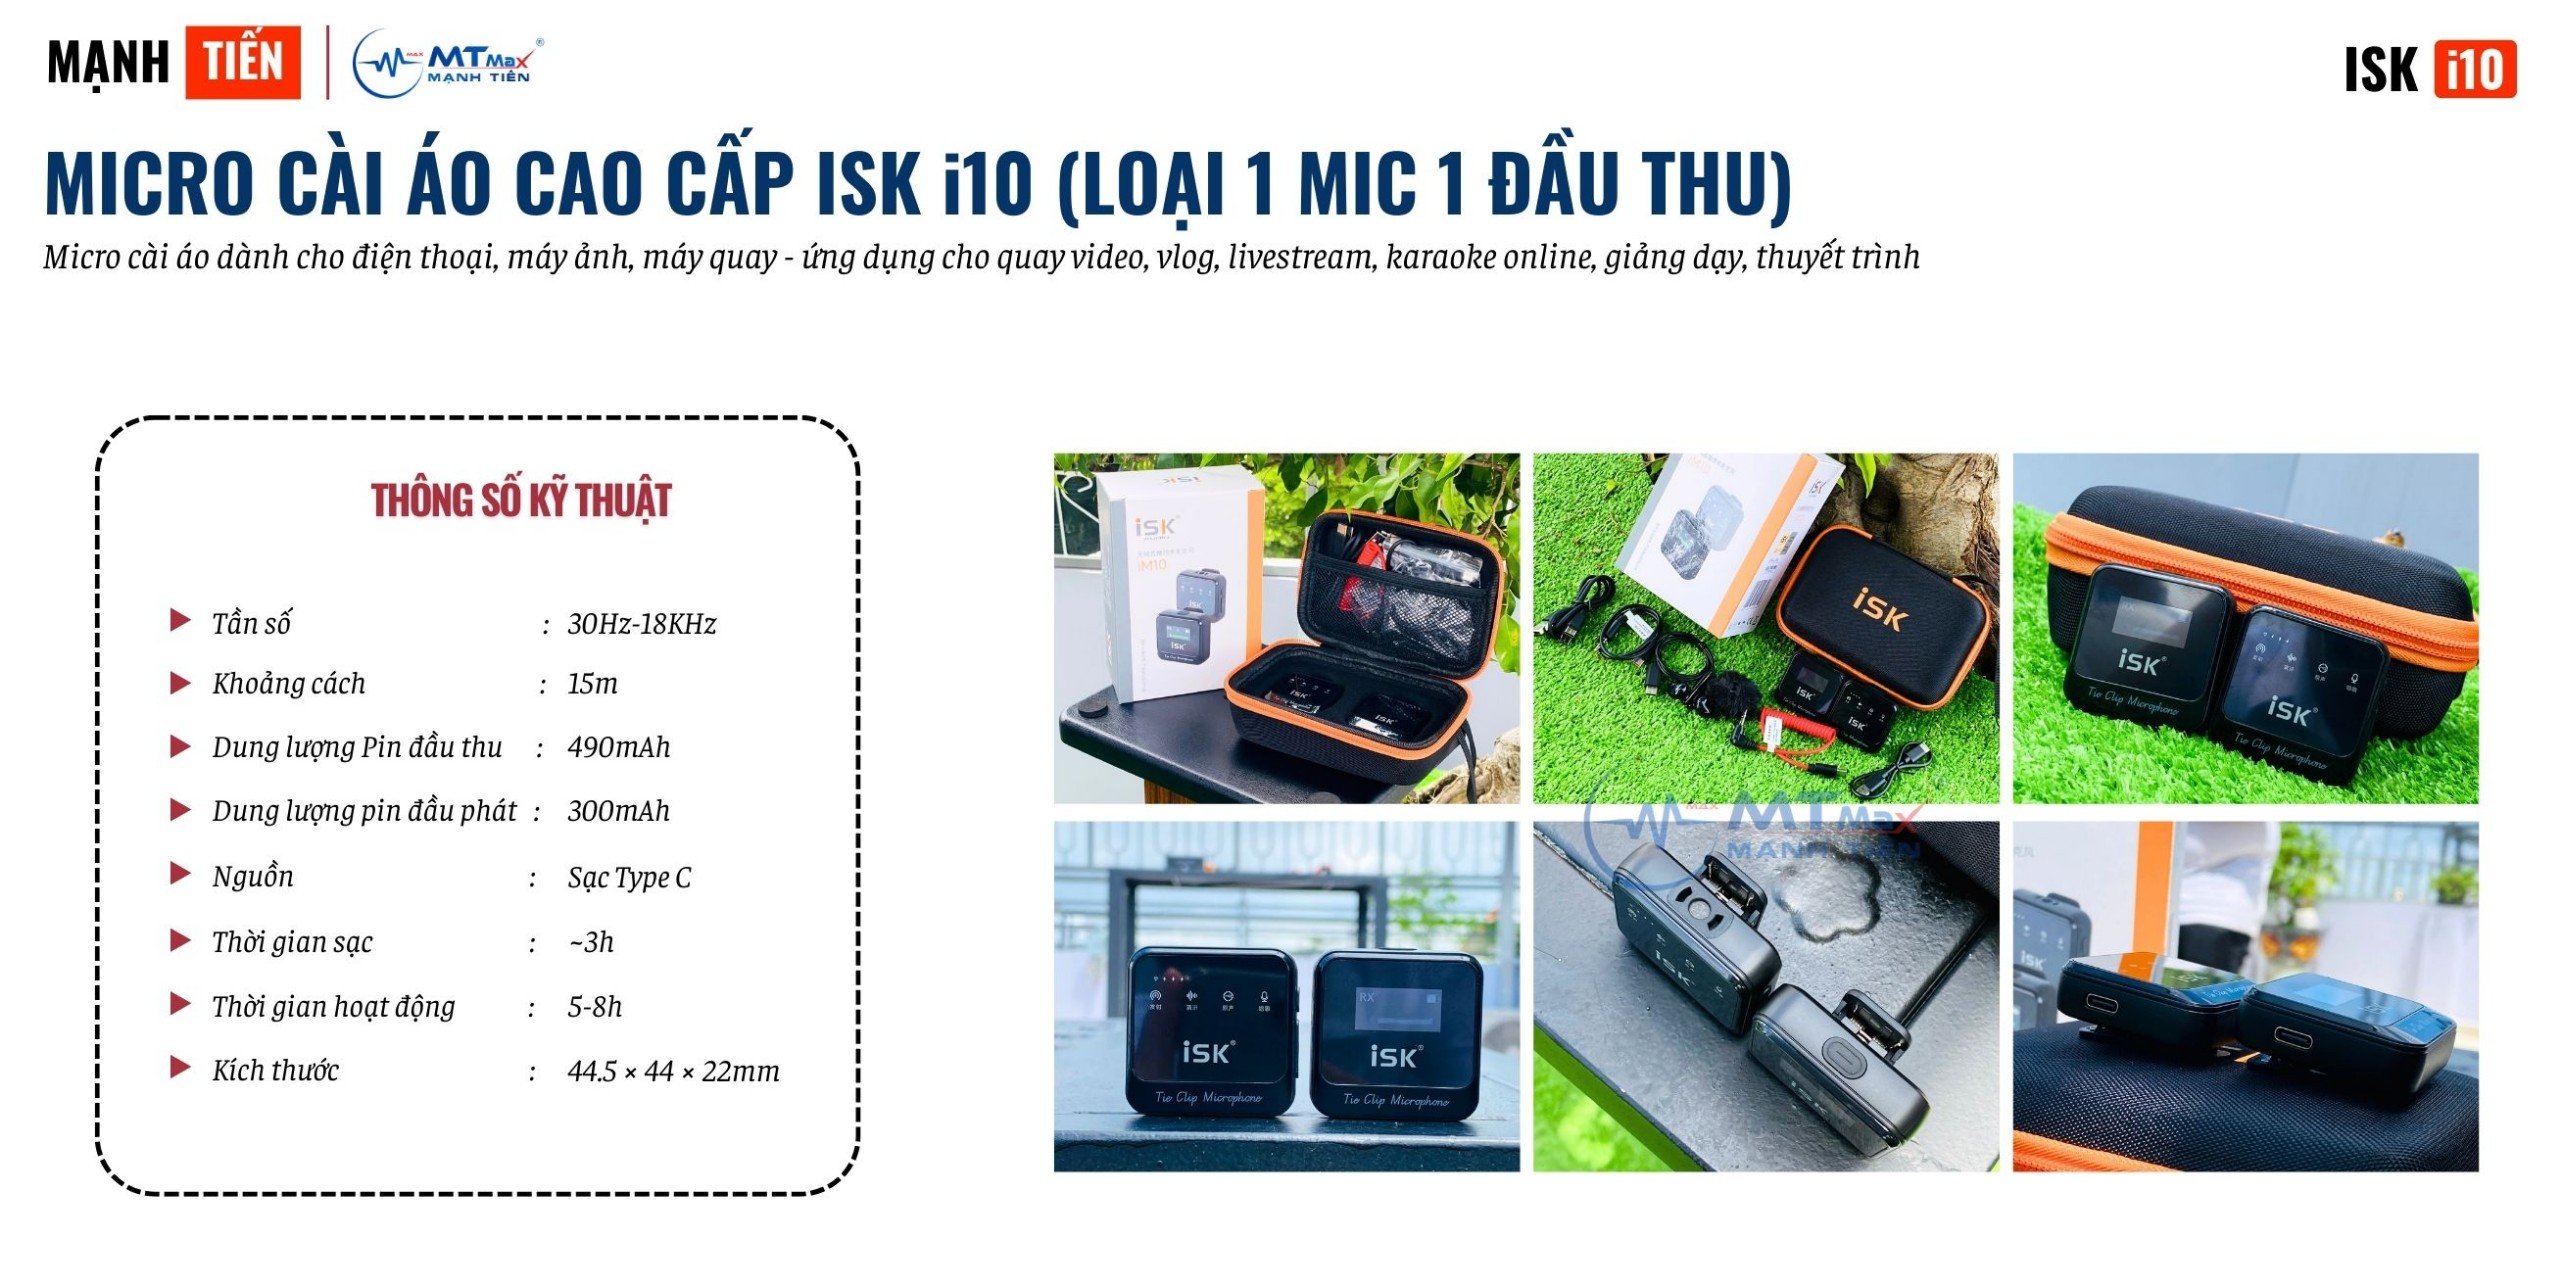 Micro Cài Áo ISK iM10 (Loại 1 Mic 1 Đầu Thu) - Micro Dành Cho Điện Thoại, Máy Ảnh, Máy Quay Hàng Chính Hãng